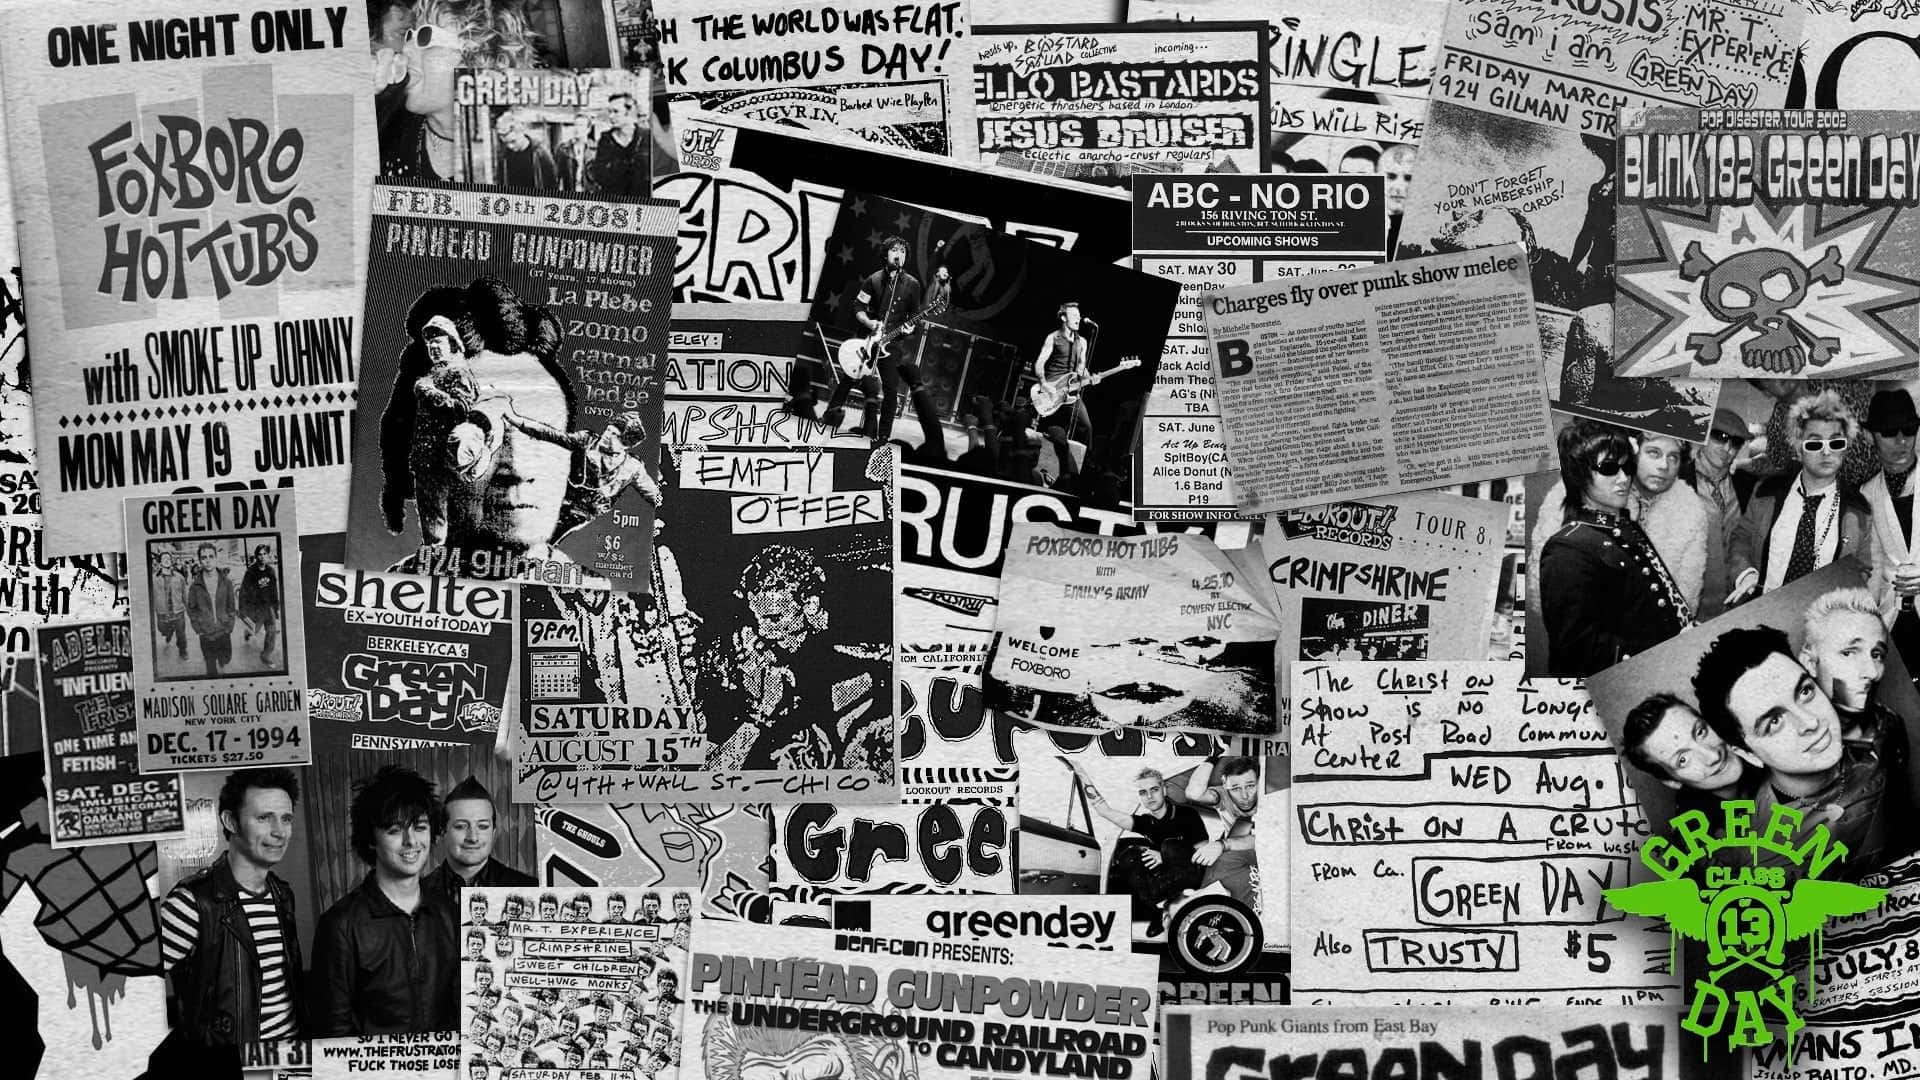 [100+] Fondos de fotos de Punk Rock | Wallpapers.com